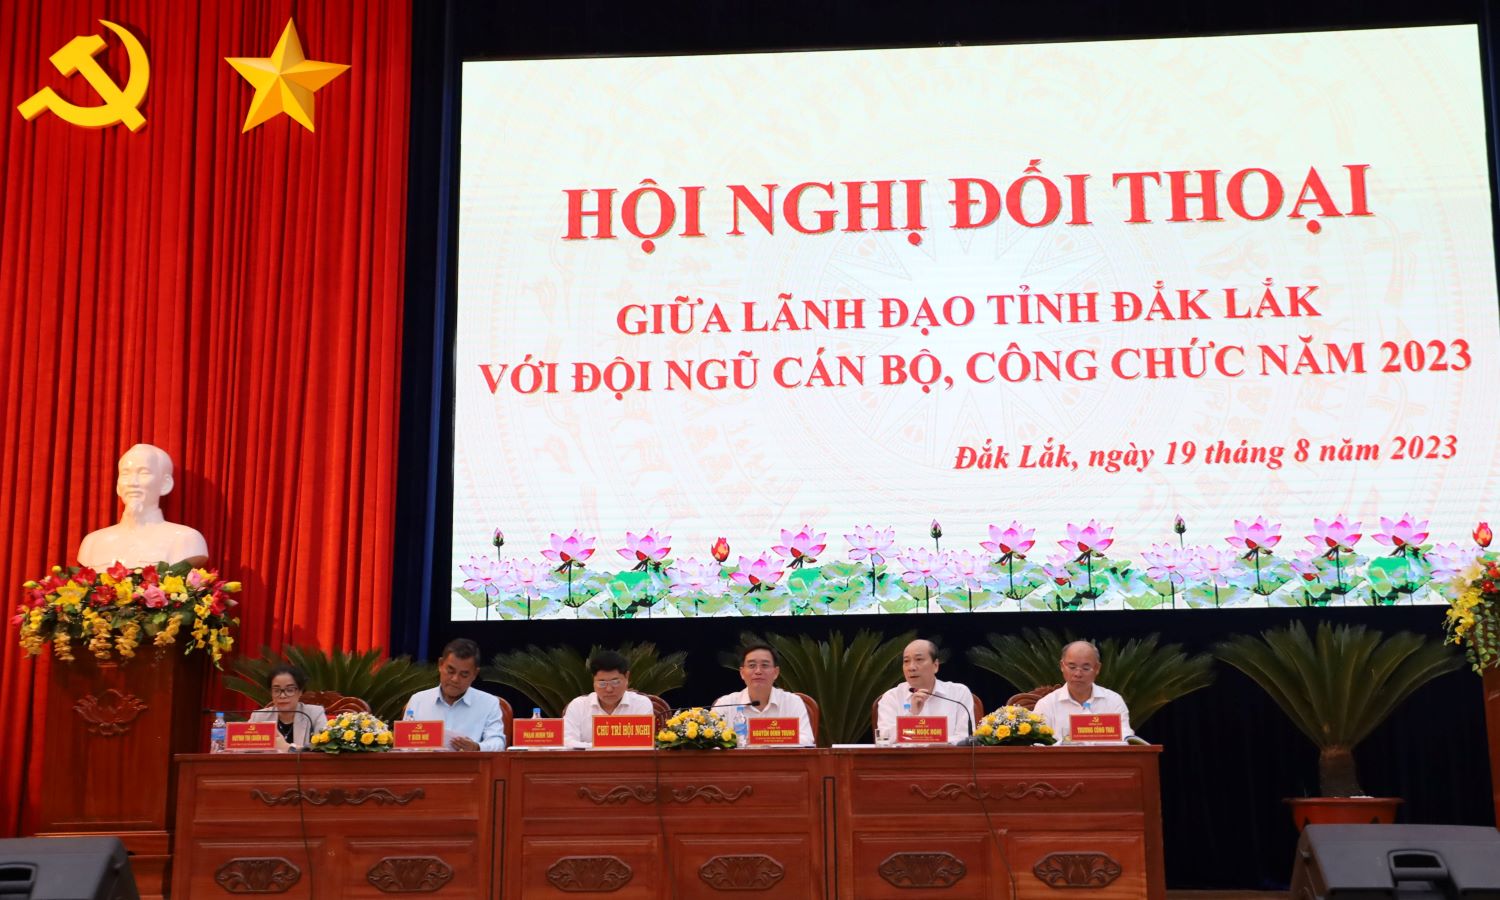 Lãnh đạo tỉnh Đắk Lắk đối thoại với đội ngũ cán bộ, công chức năm 2023